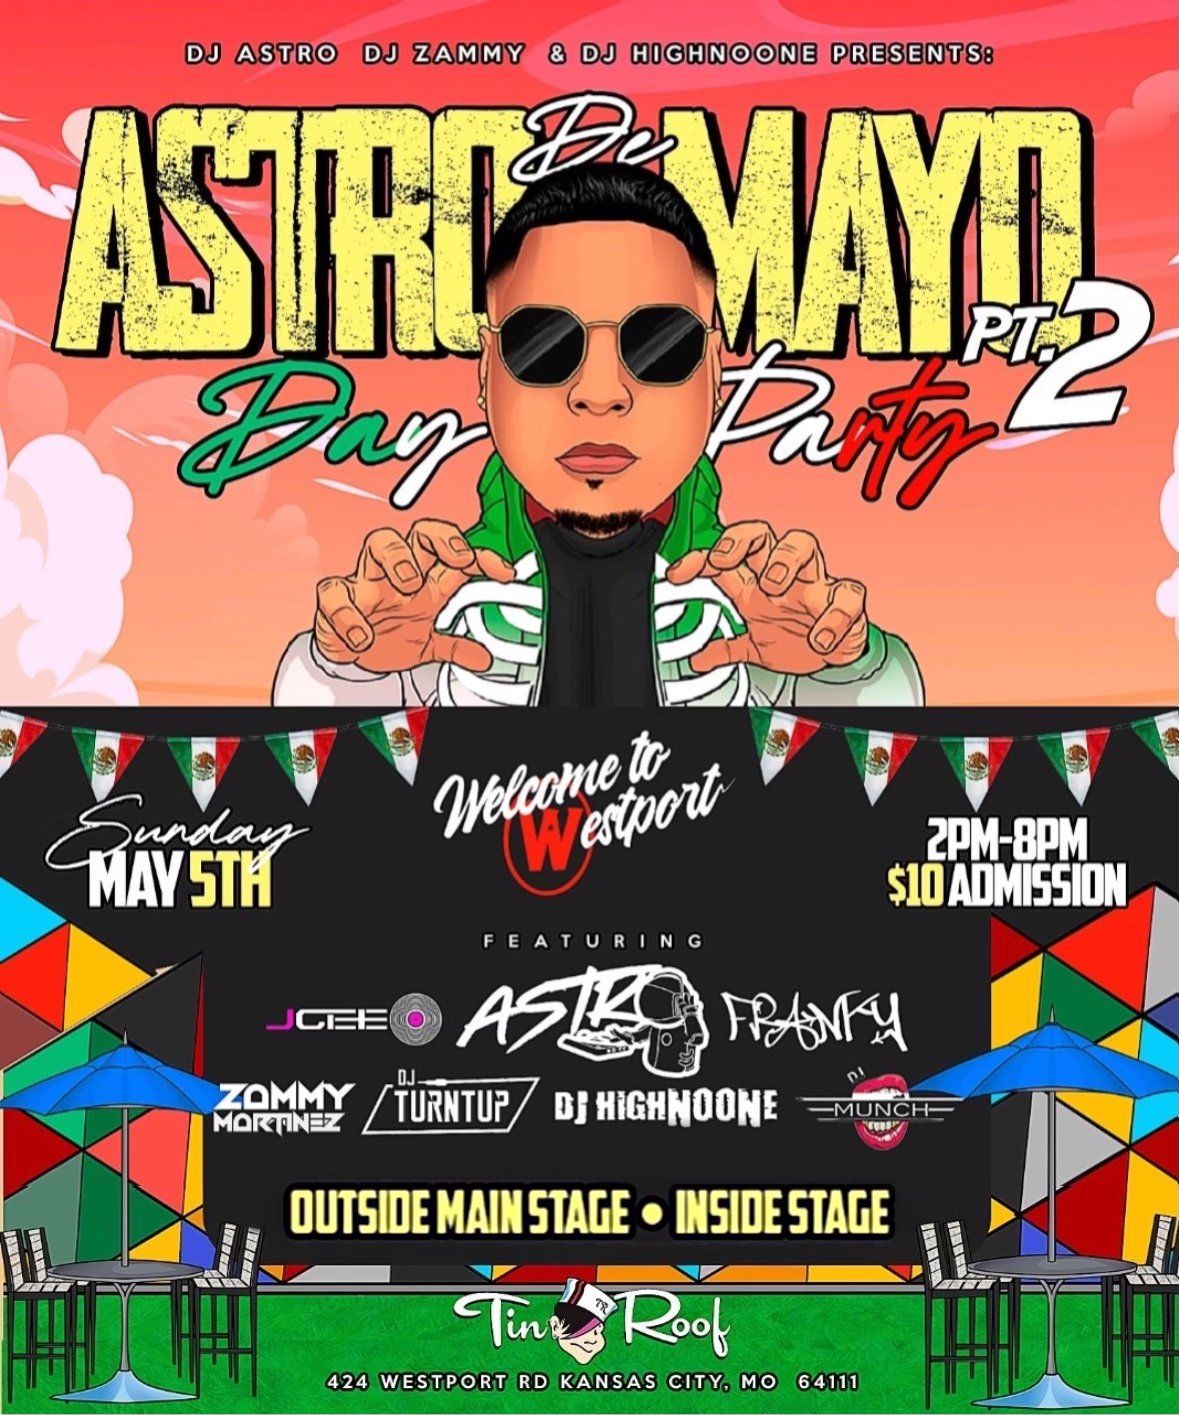 Astro De Mayo: Day Party